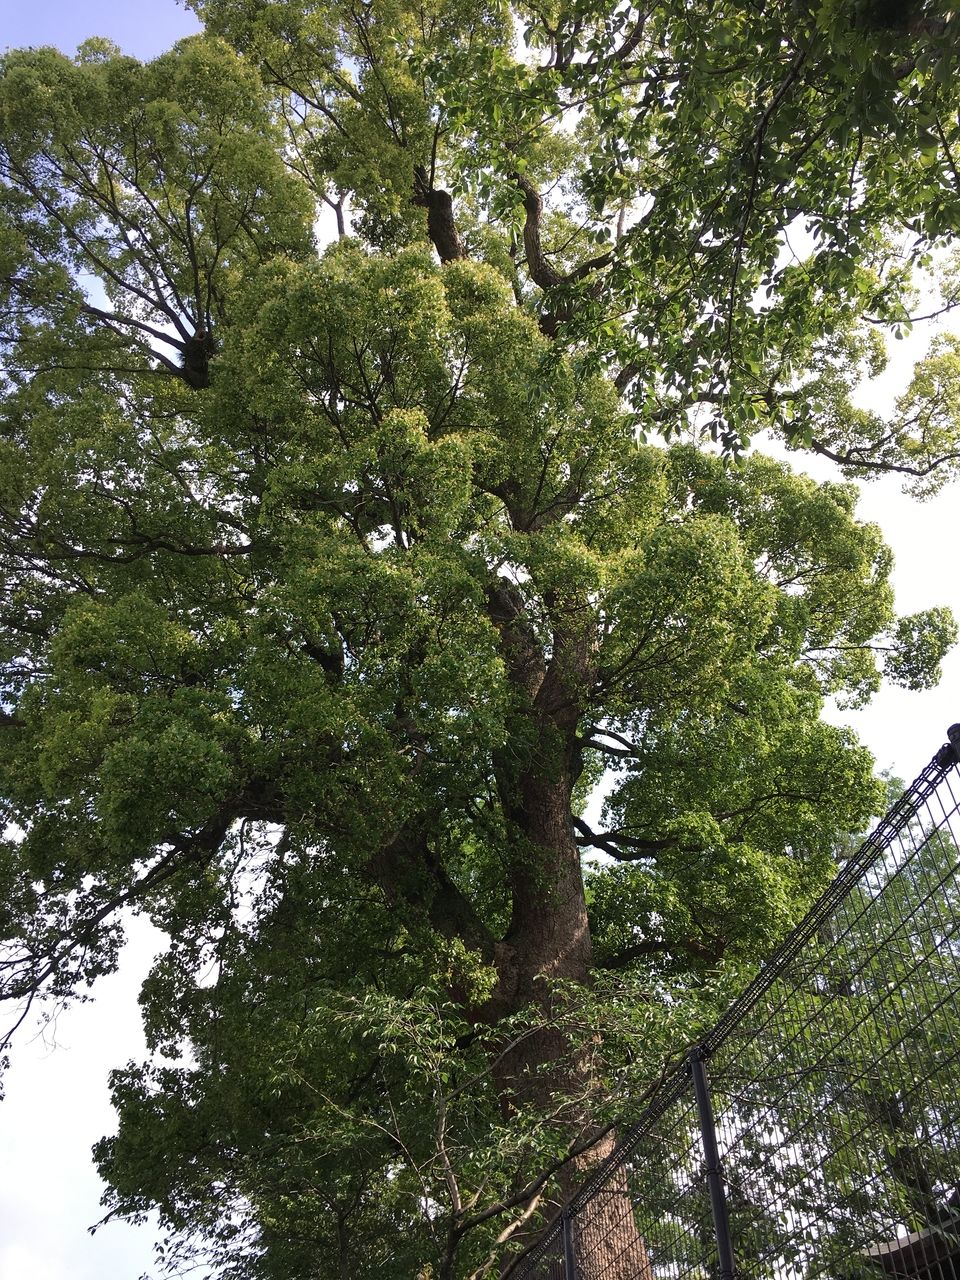 熊本市東区にある沼山津神社、樹齢数百年の御神木に囲まれて新緑のエネルギーが満ち満ちています。